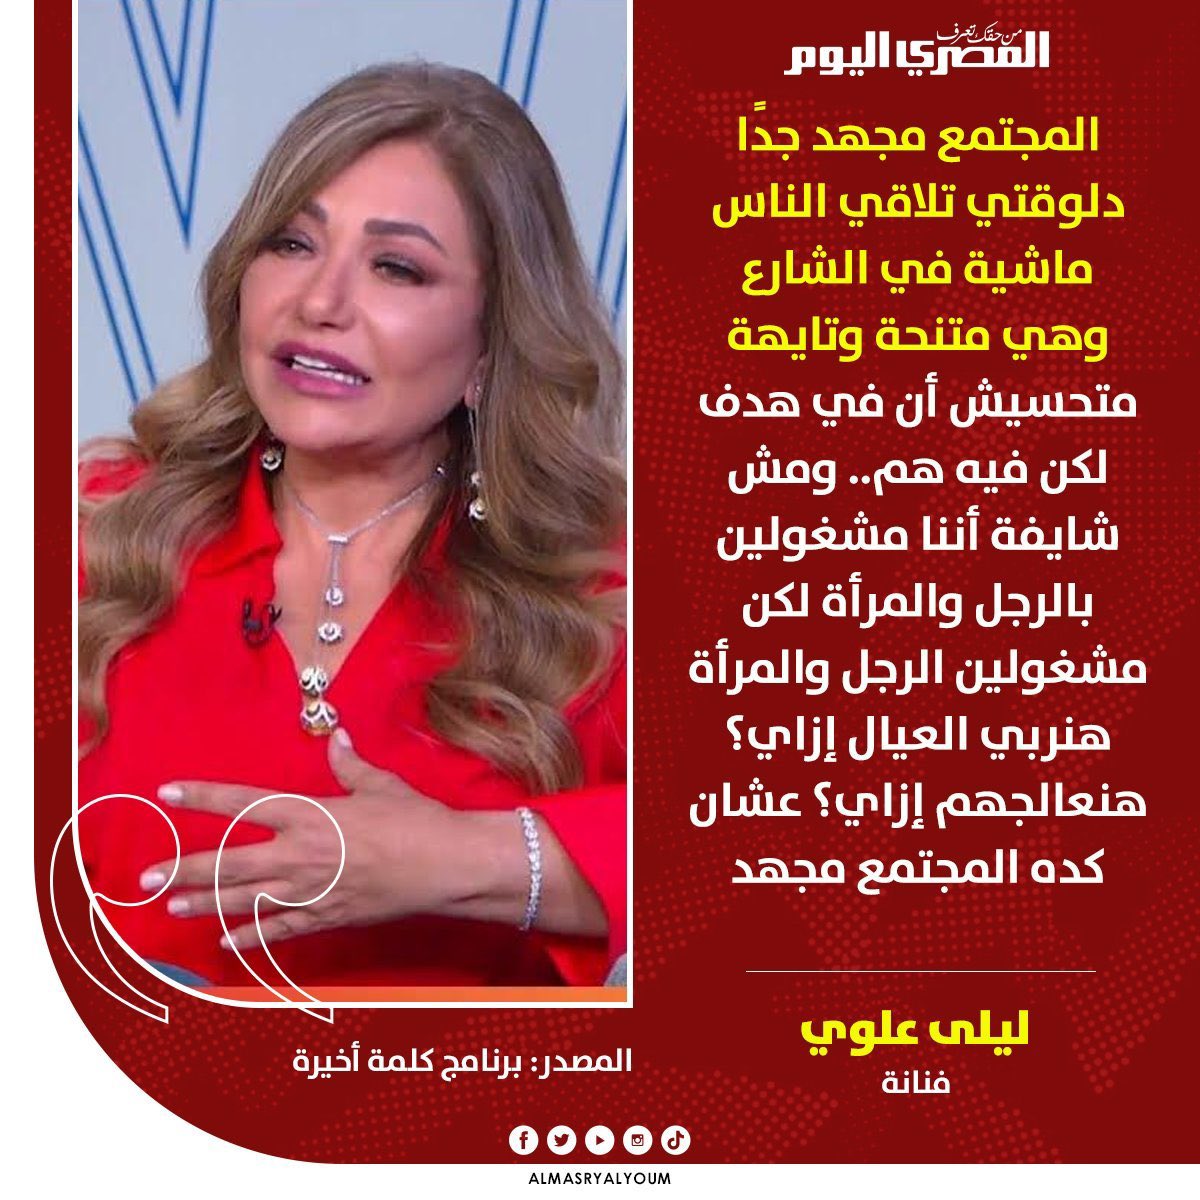 ليلى علوي أجدع من مرشحي الرئاسة  

تصريحات ليلى علوي المرفقة،
من برنامج كلمة أخيرة مع لميس الحديدي.